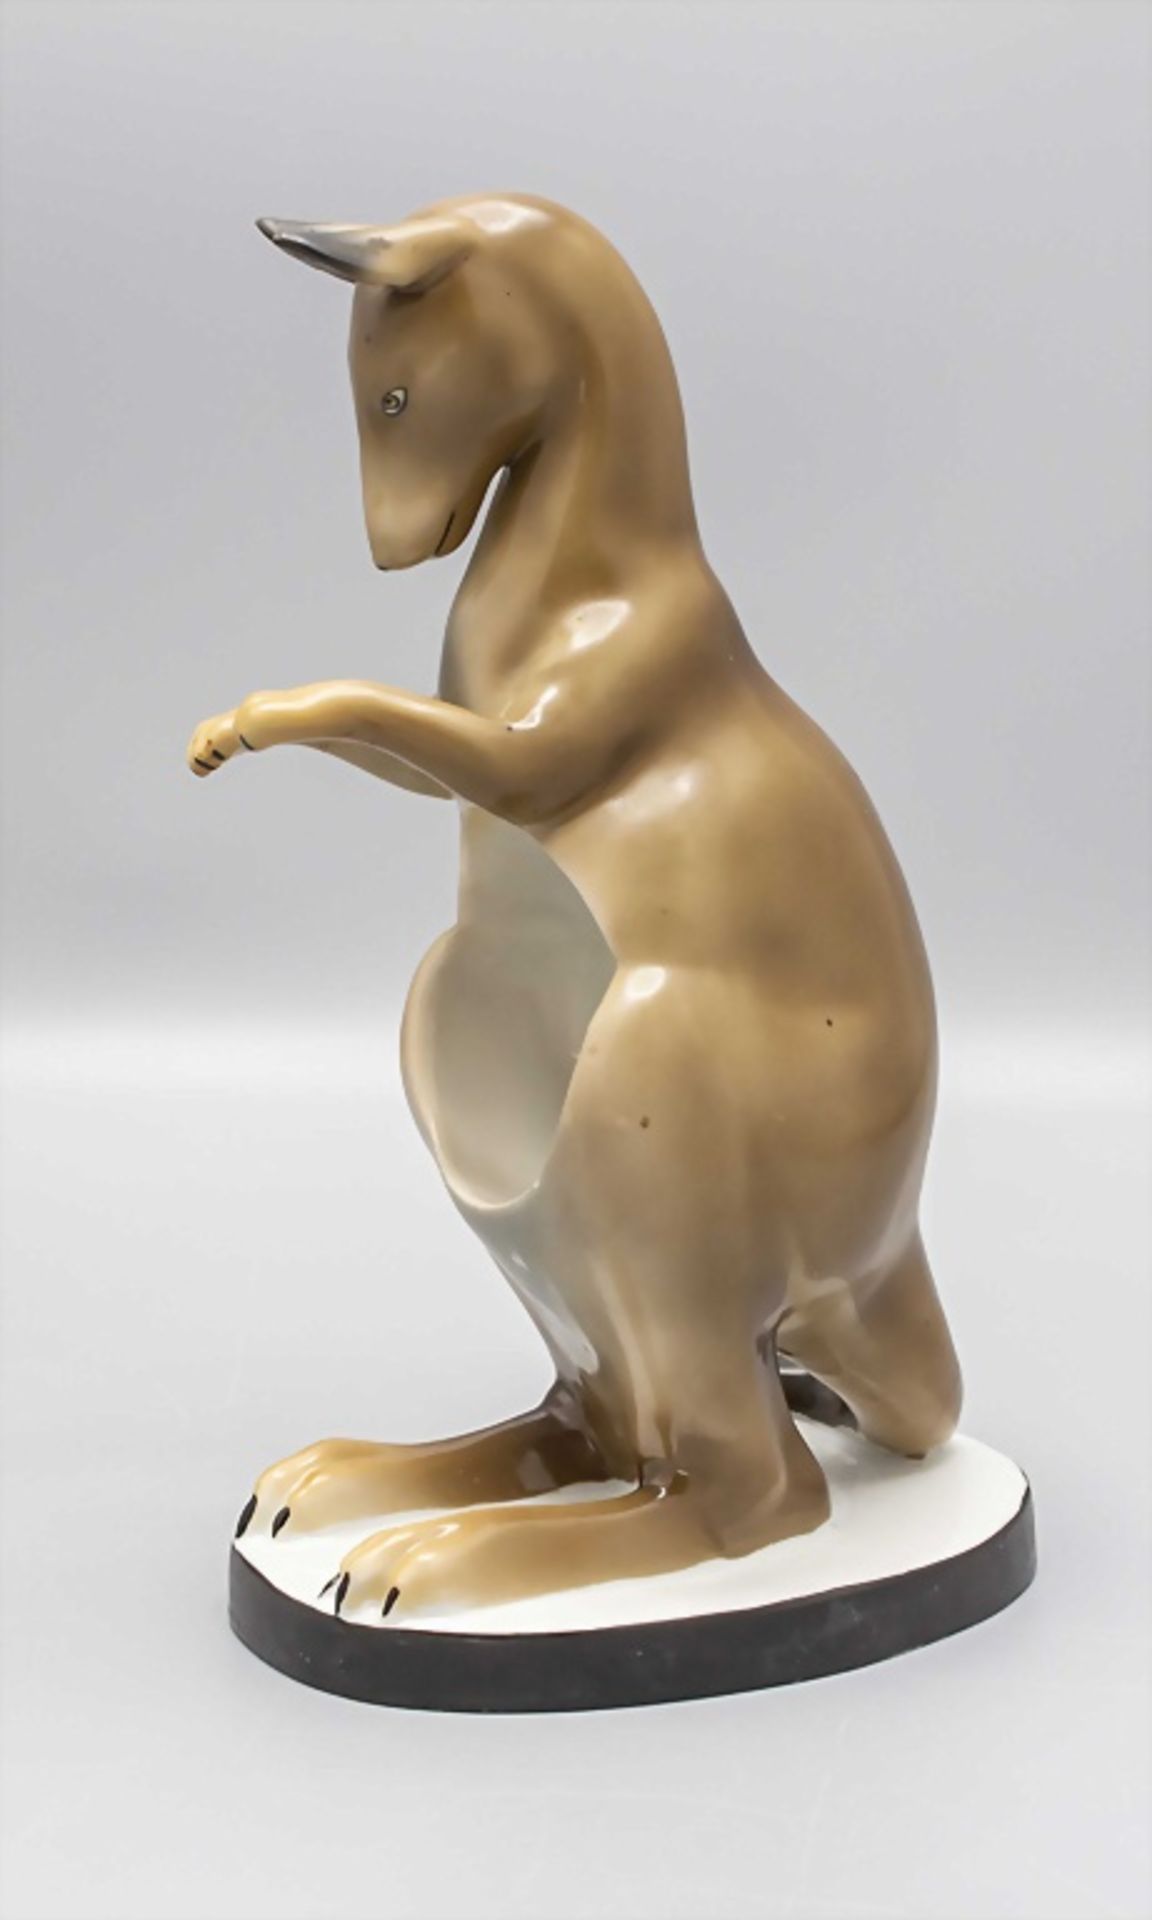 Porzallan Känguru als Halter / A porcelain kangaroo as holder, Anfang 20. Jh.